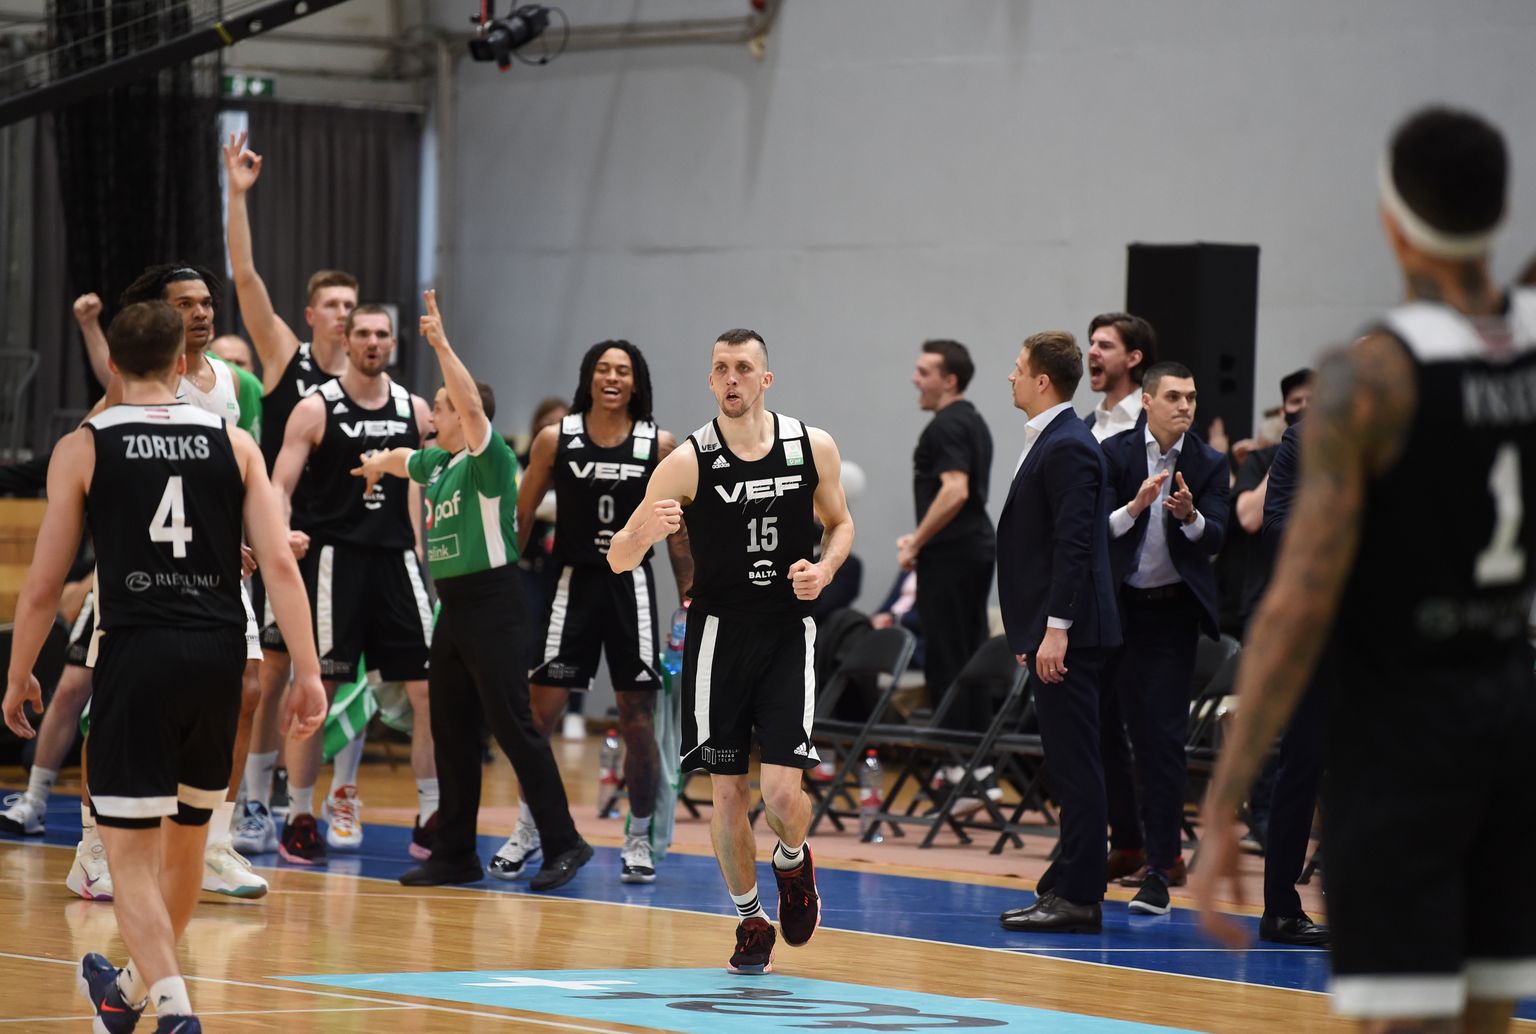 "Pafbet" Latvijas - Igaunijas Basketbola līgas fināla spēle vīriešiem, kurā tiekas "VEF Rīga" un BC Kalev/Cramo komandas  Olimpiskajā sporta centrā.